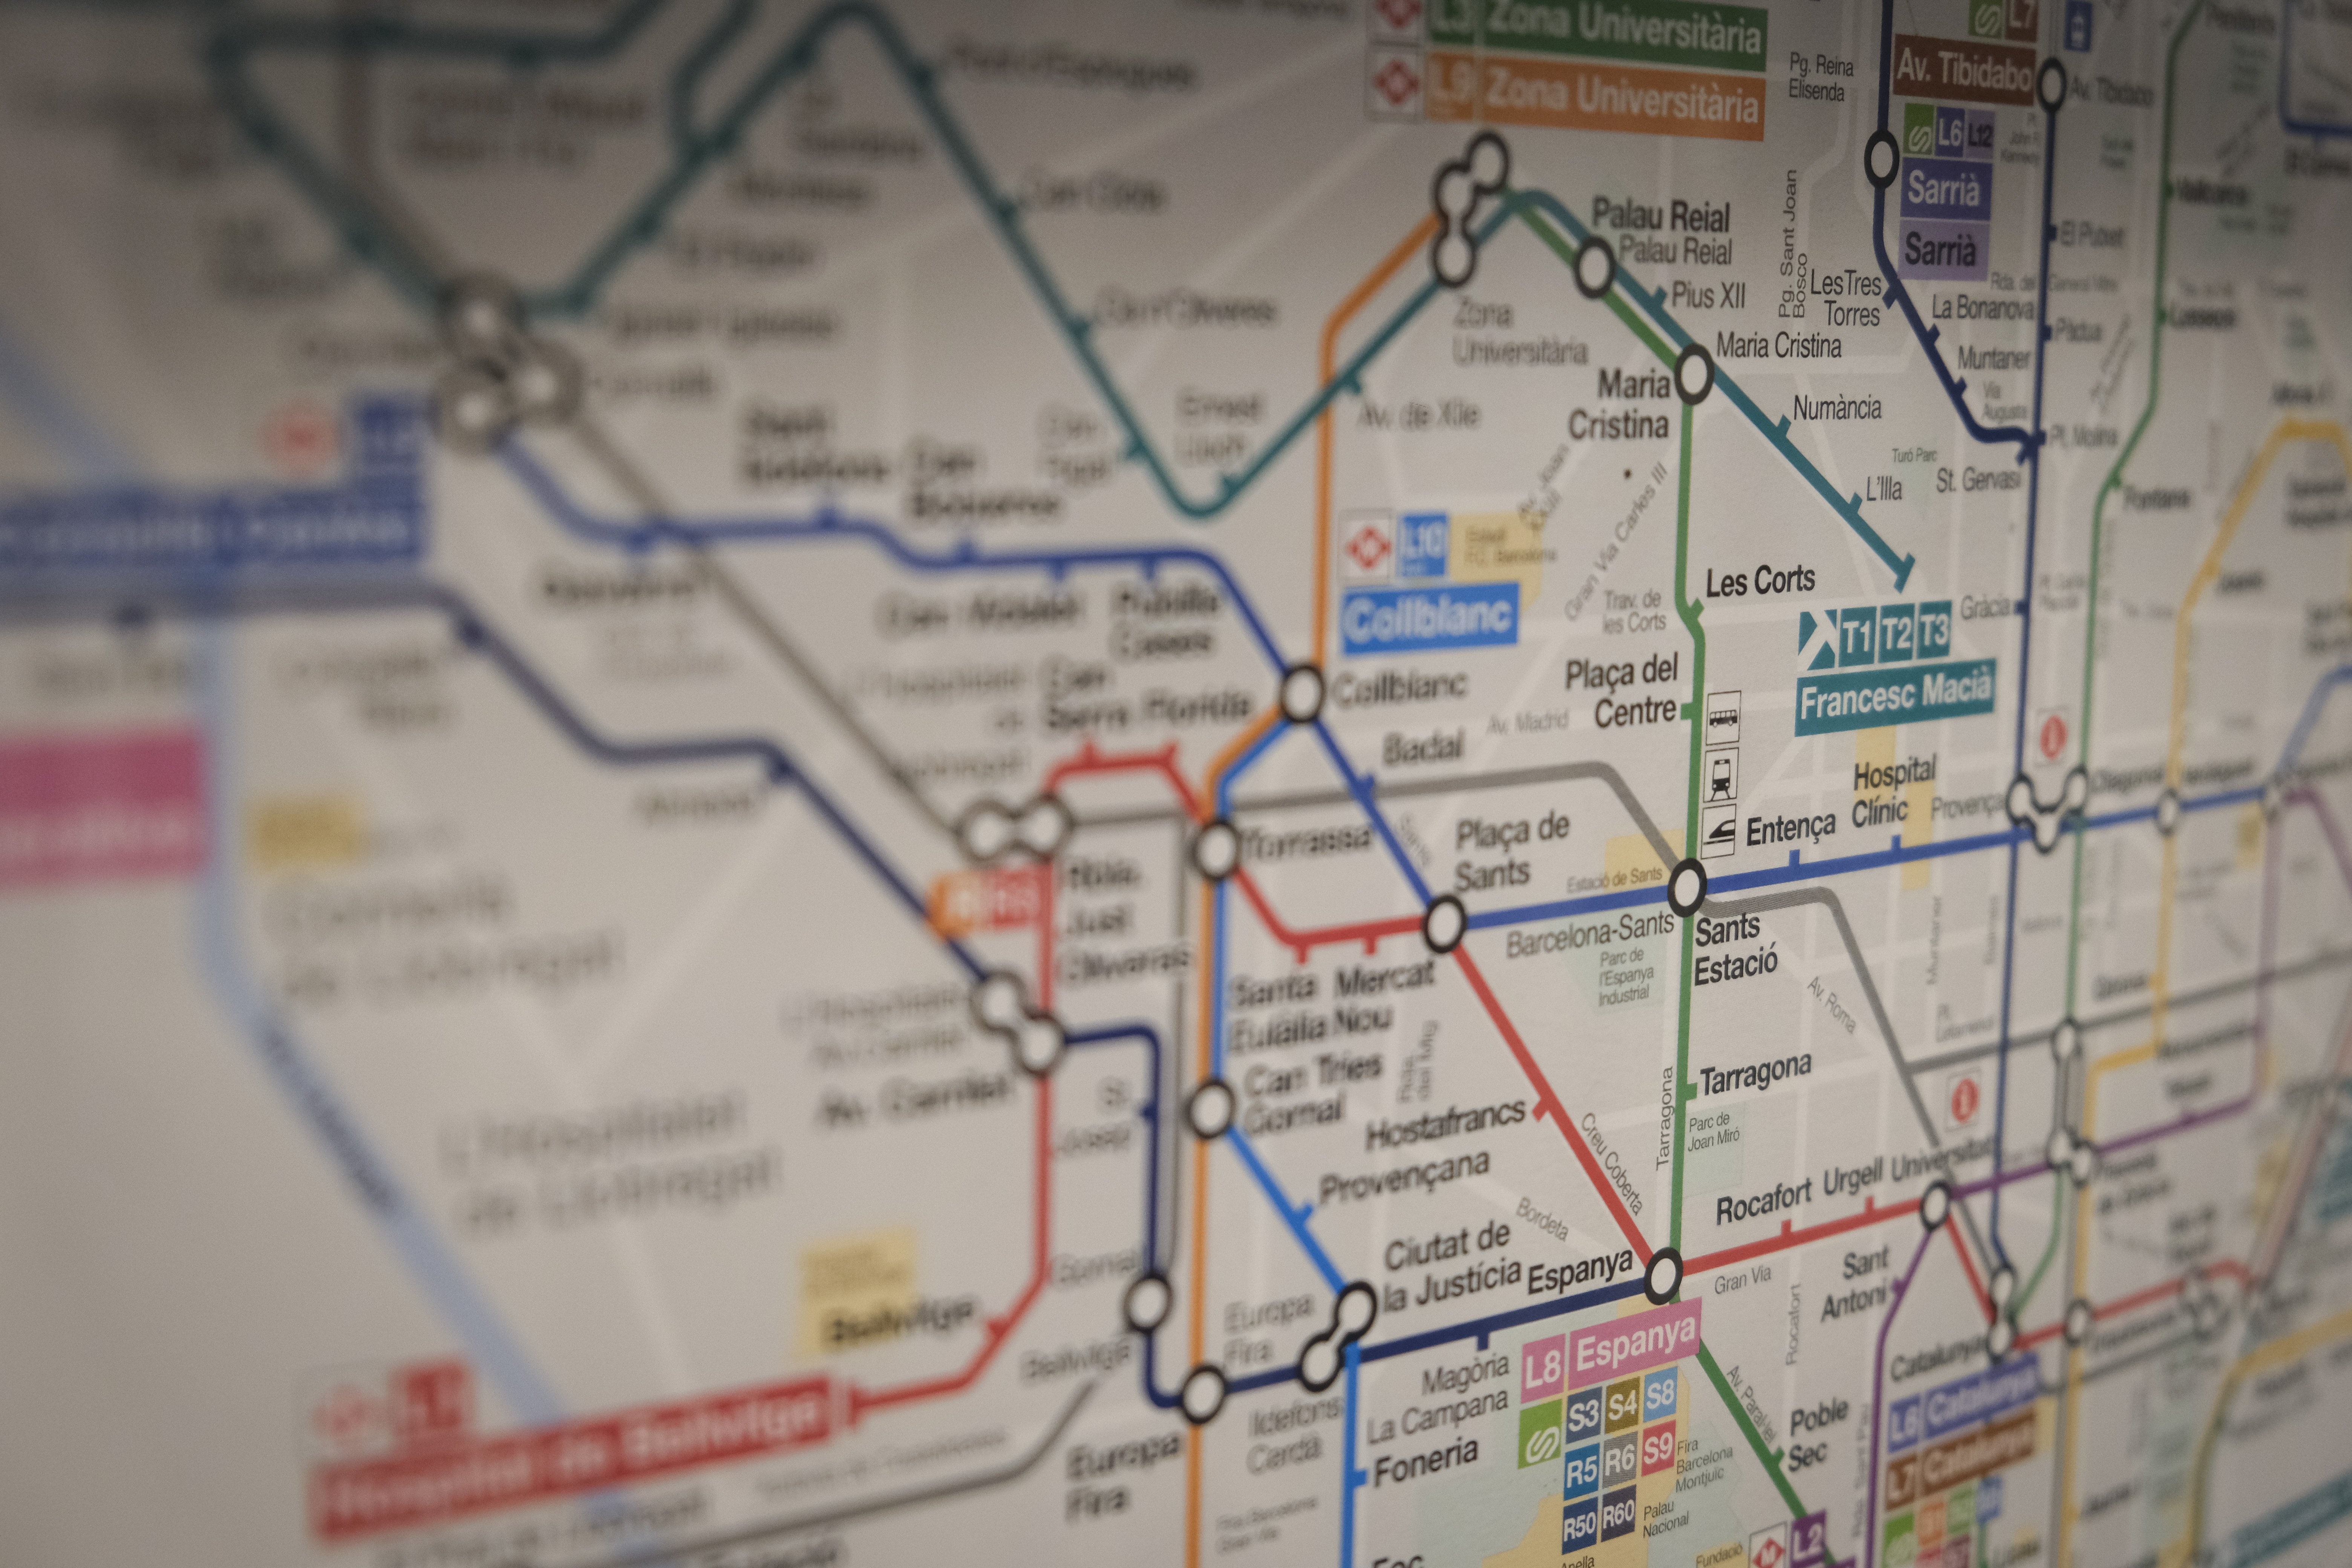 Cinc plànols alternatius del Metro de Barcelona